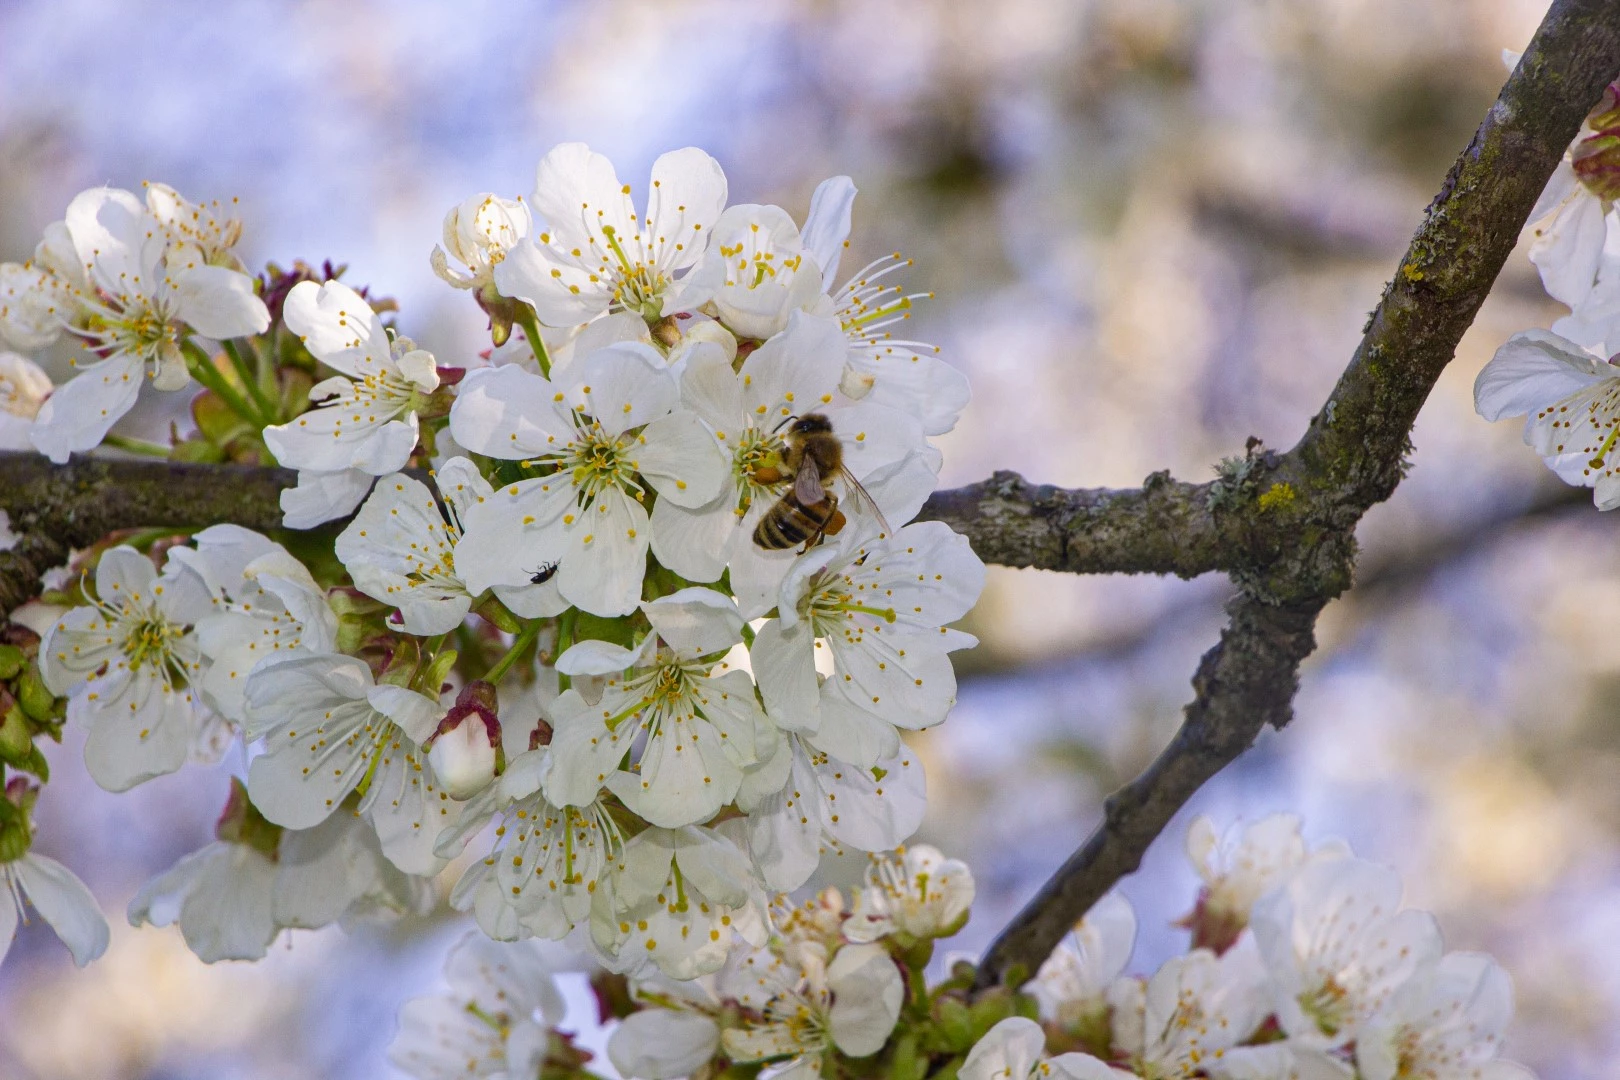 Fotografie einer Biene auf Kirschblüten